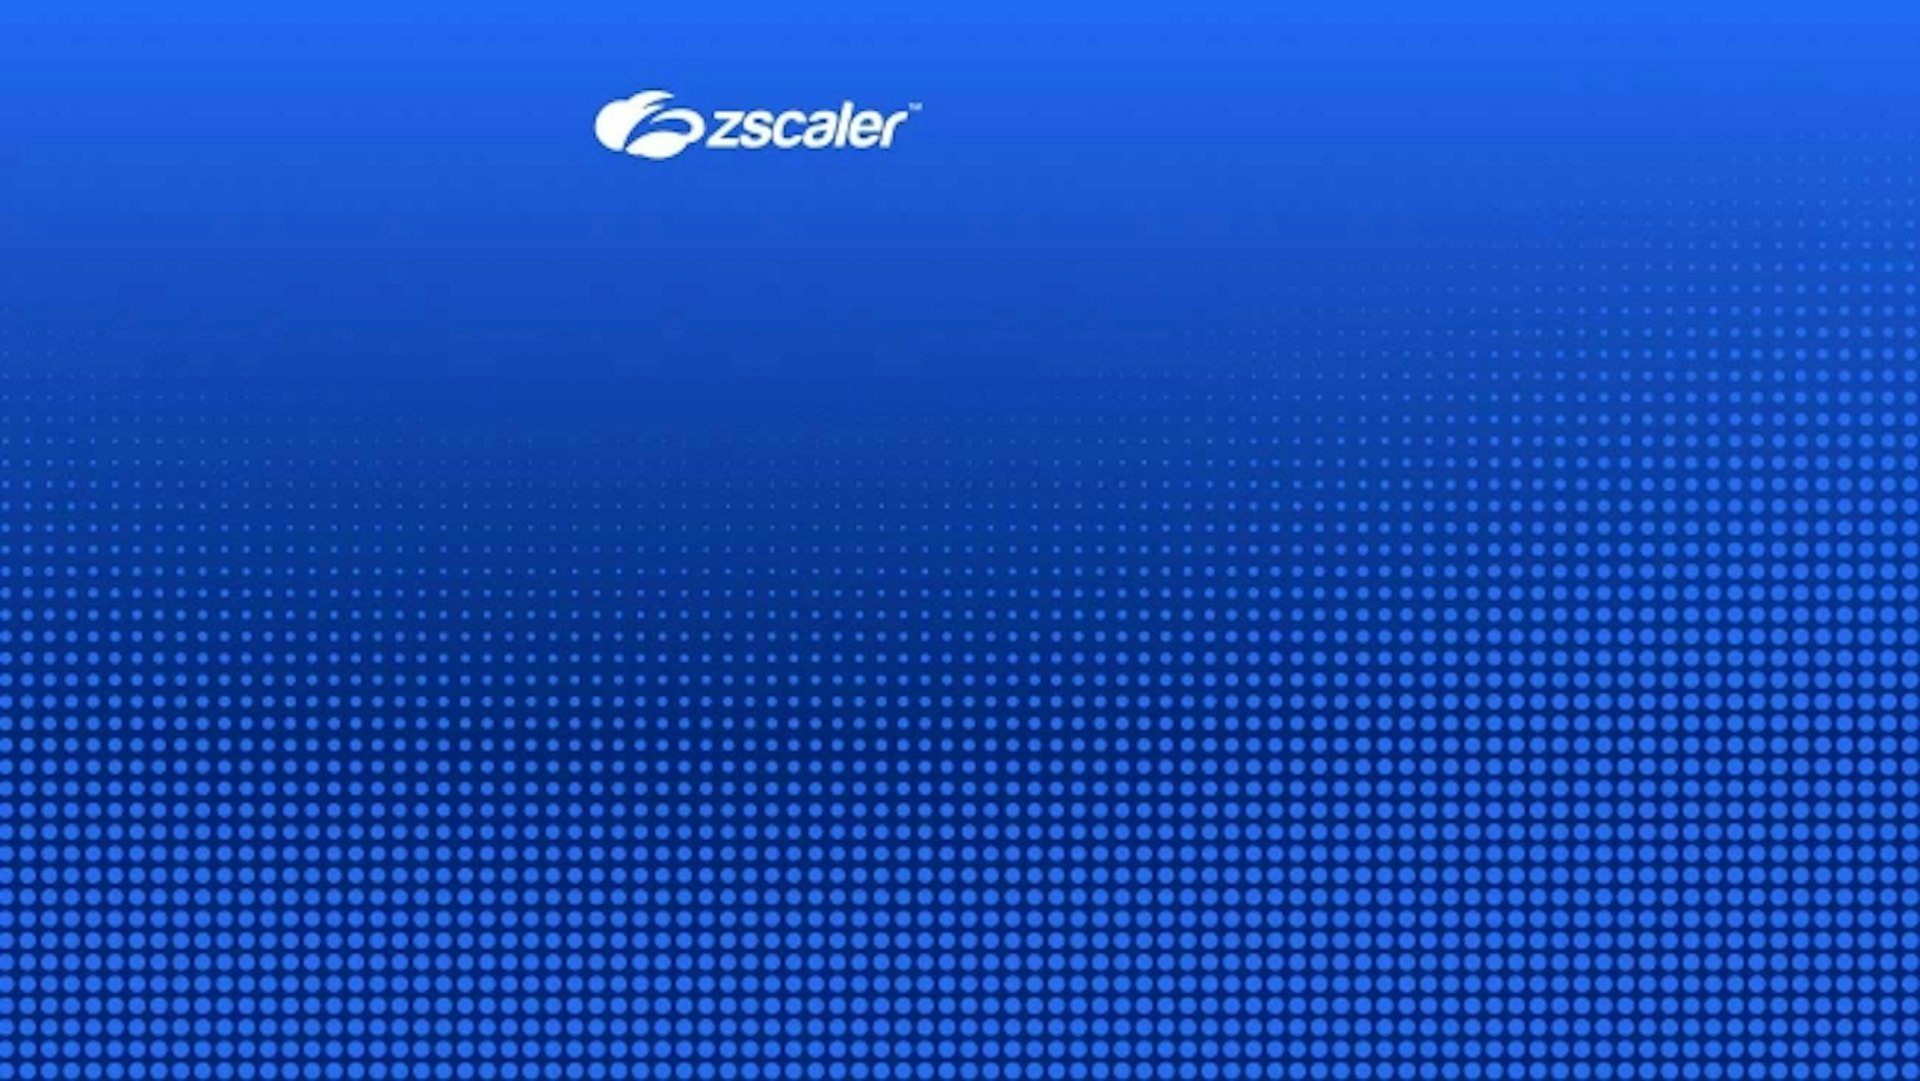 Resumen de soluciones de Zscaler y Okta para fusiones y adquisiciones, y desinversiones